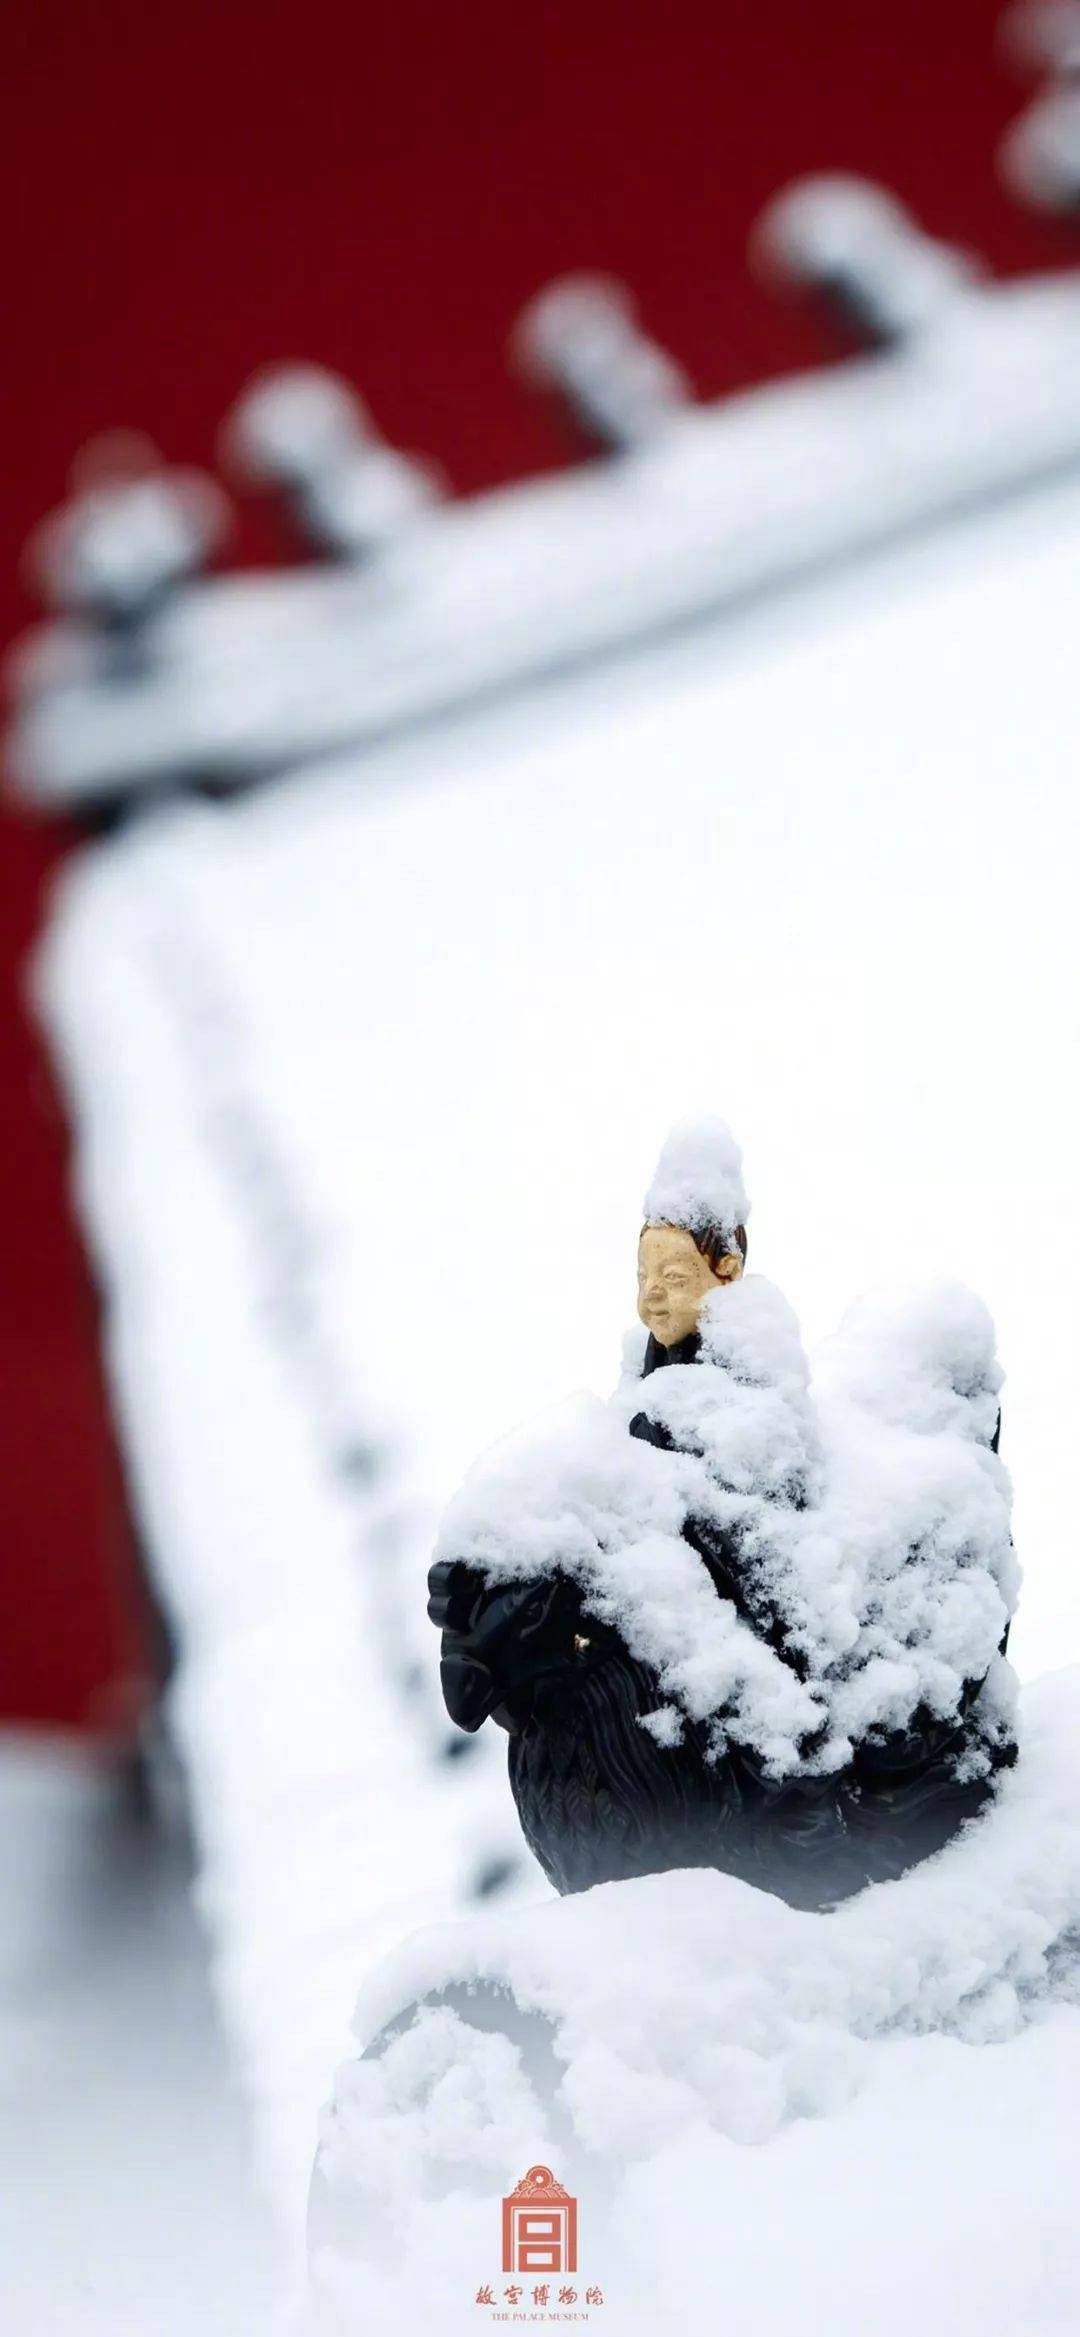 壁纸| 冬日故宫雪景手机壁纸,优雅大气